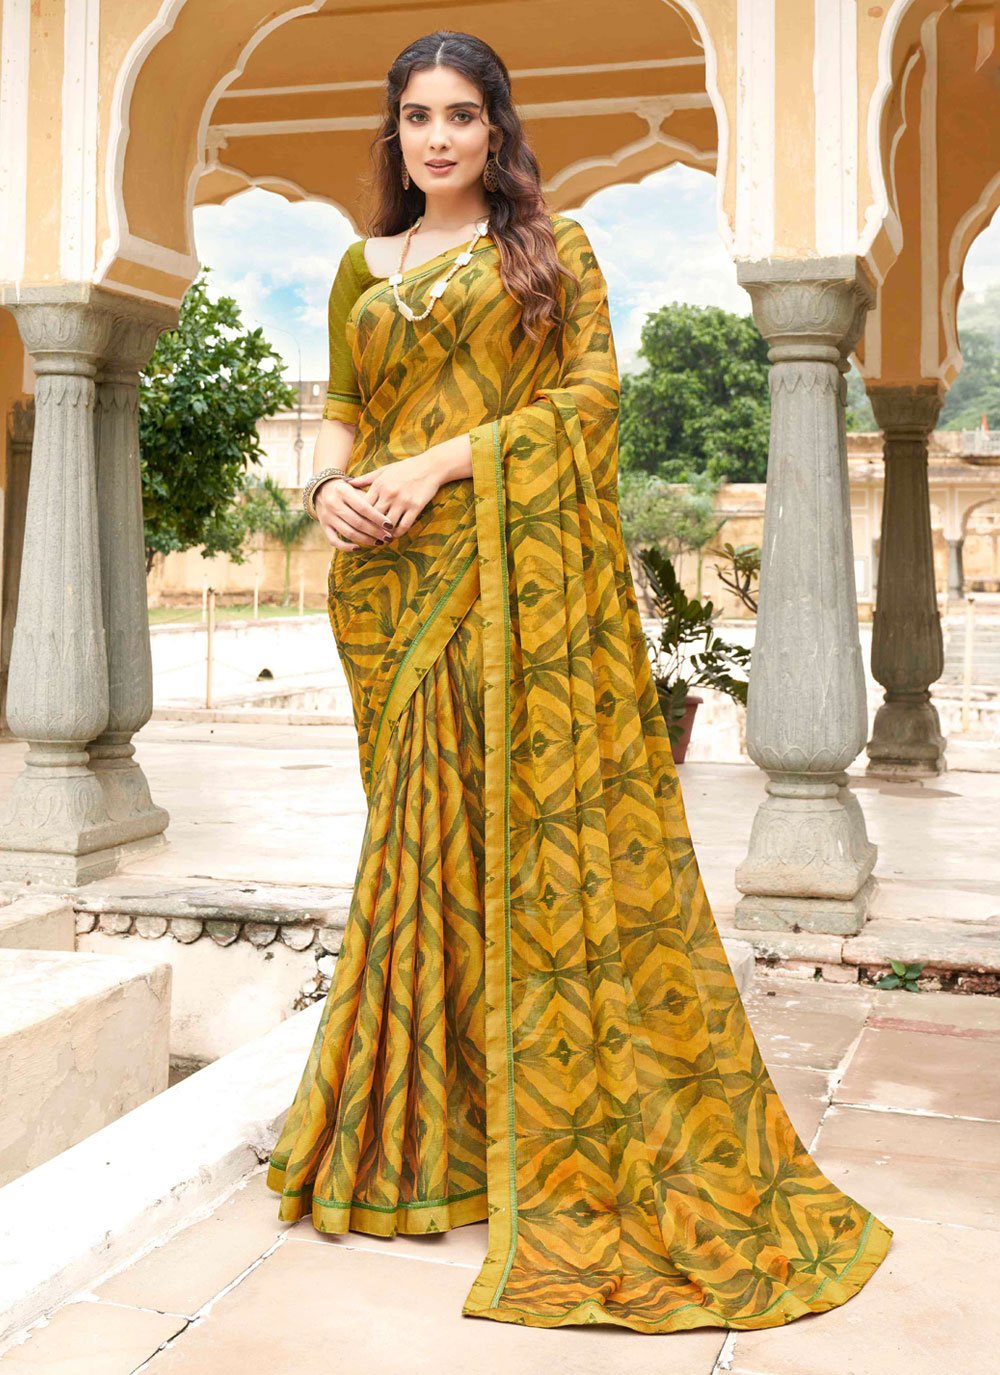 Simple Yellow Saree Look | Saree Dress